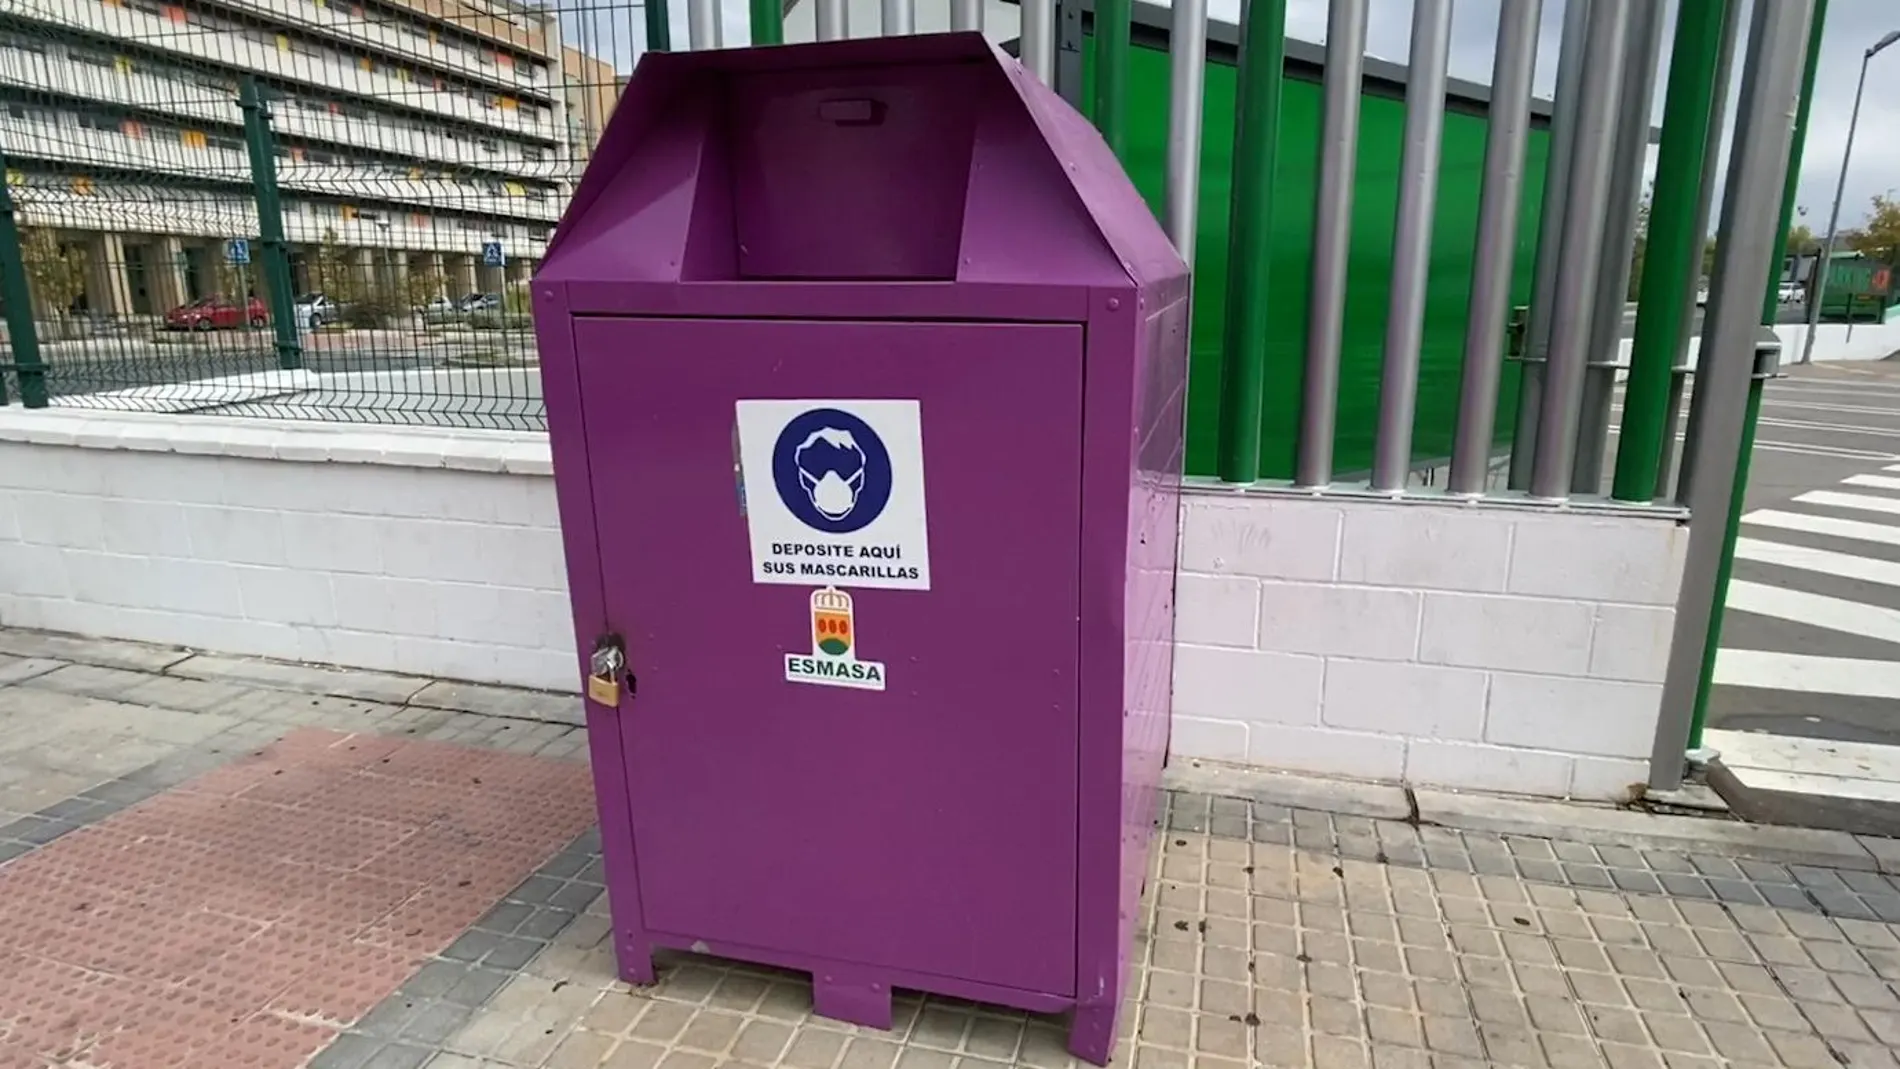 El ayuntamiento de Alcorcón instala contenedores de mascarillas